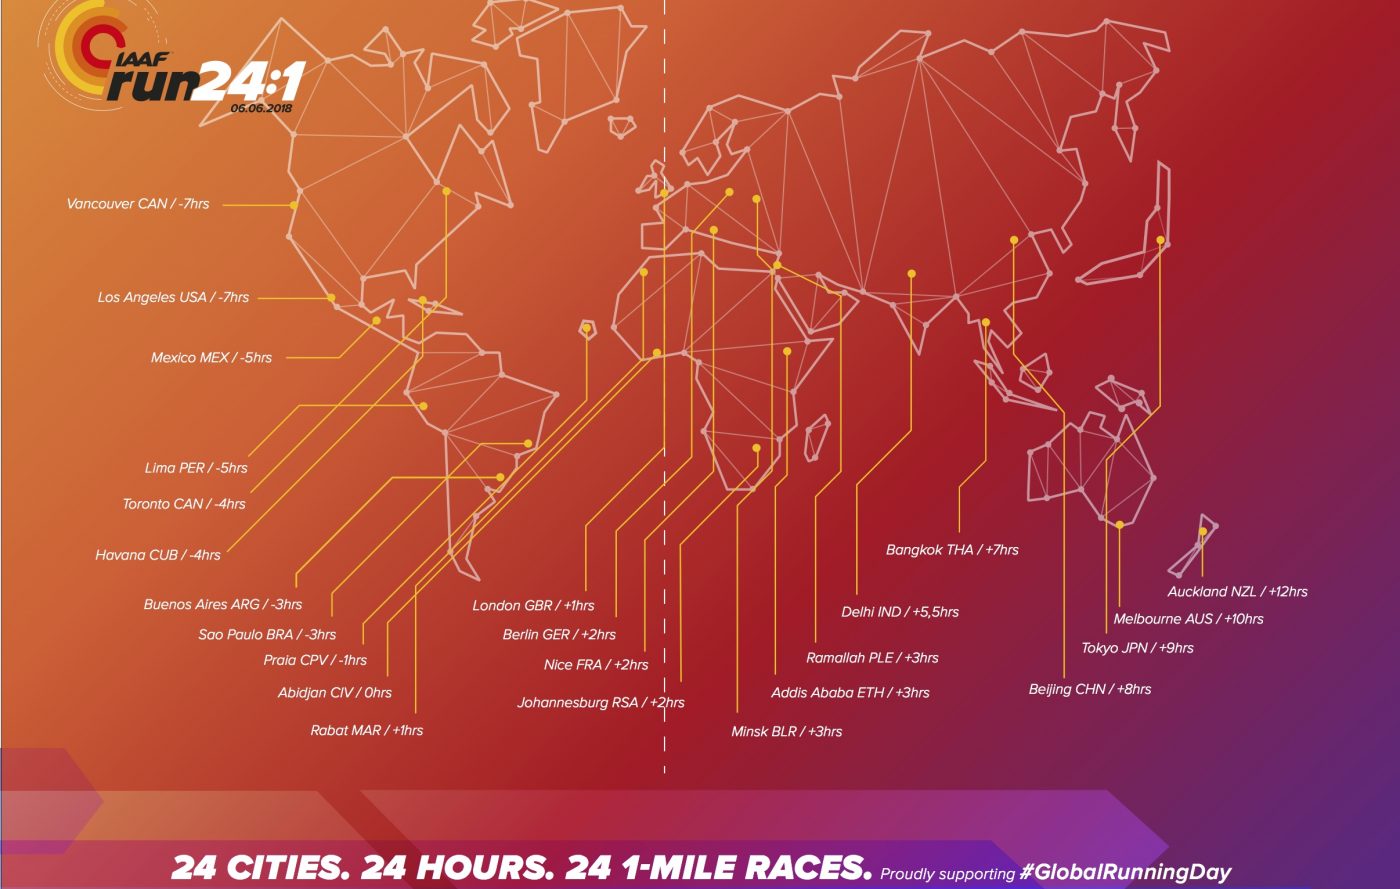 IAAF 24:1 run #globalrunningday